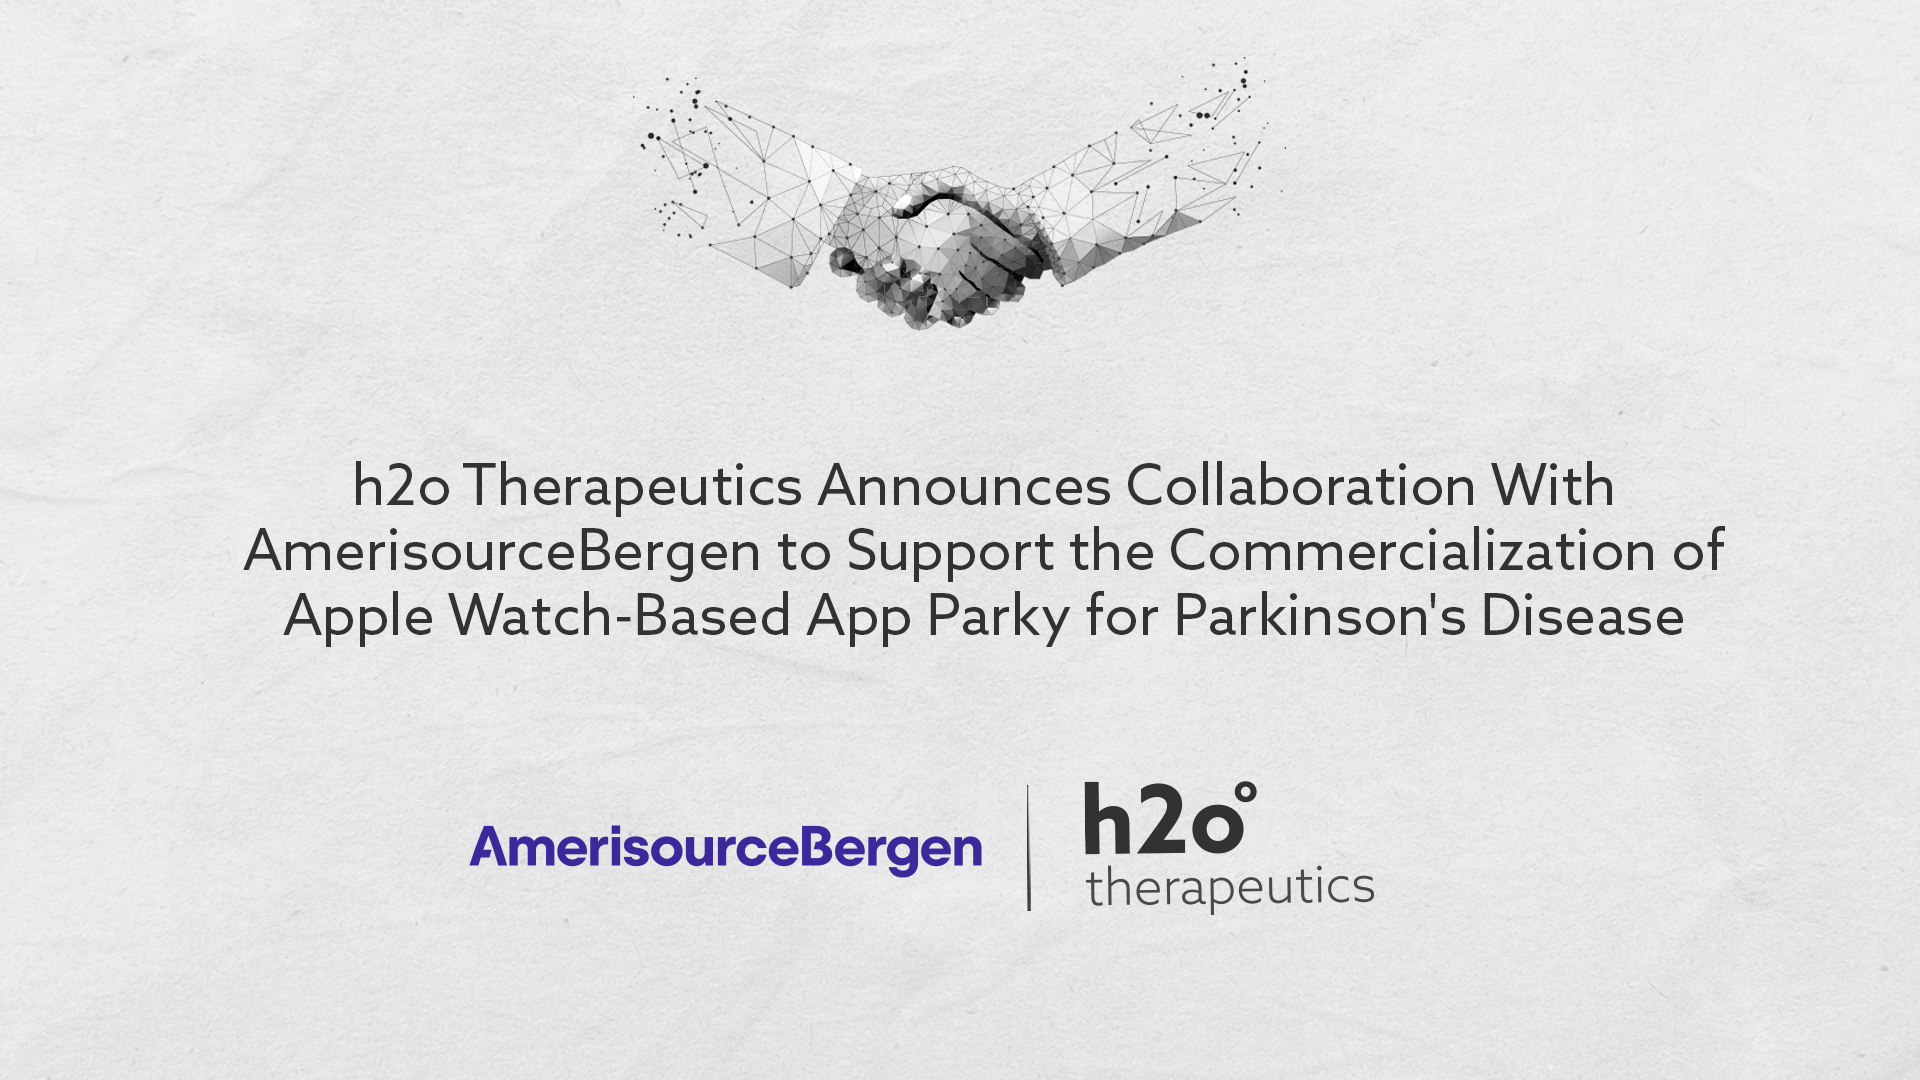 h2o Therapeutics Announces Collaboration With AmerisourceBergen